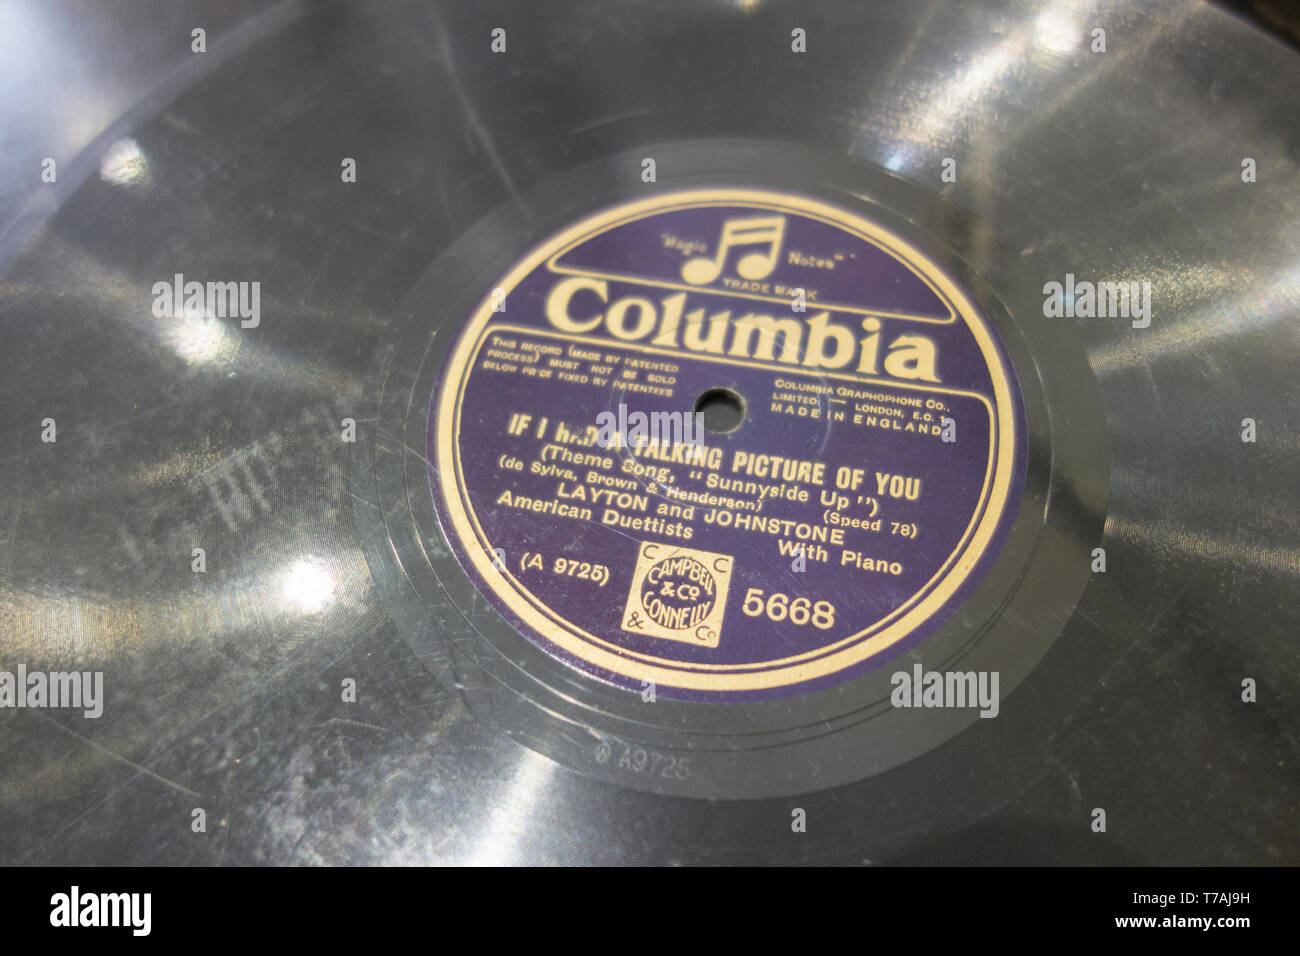 Columbia Gramophone Company etichetta discografica con se ho avuto una conversazione foto di voi da Layton e Johnston, American Duettists Foto Stock